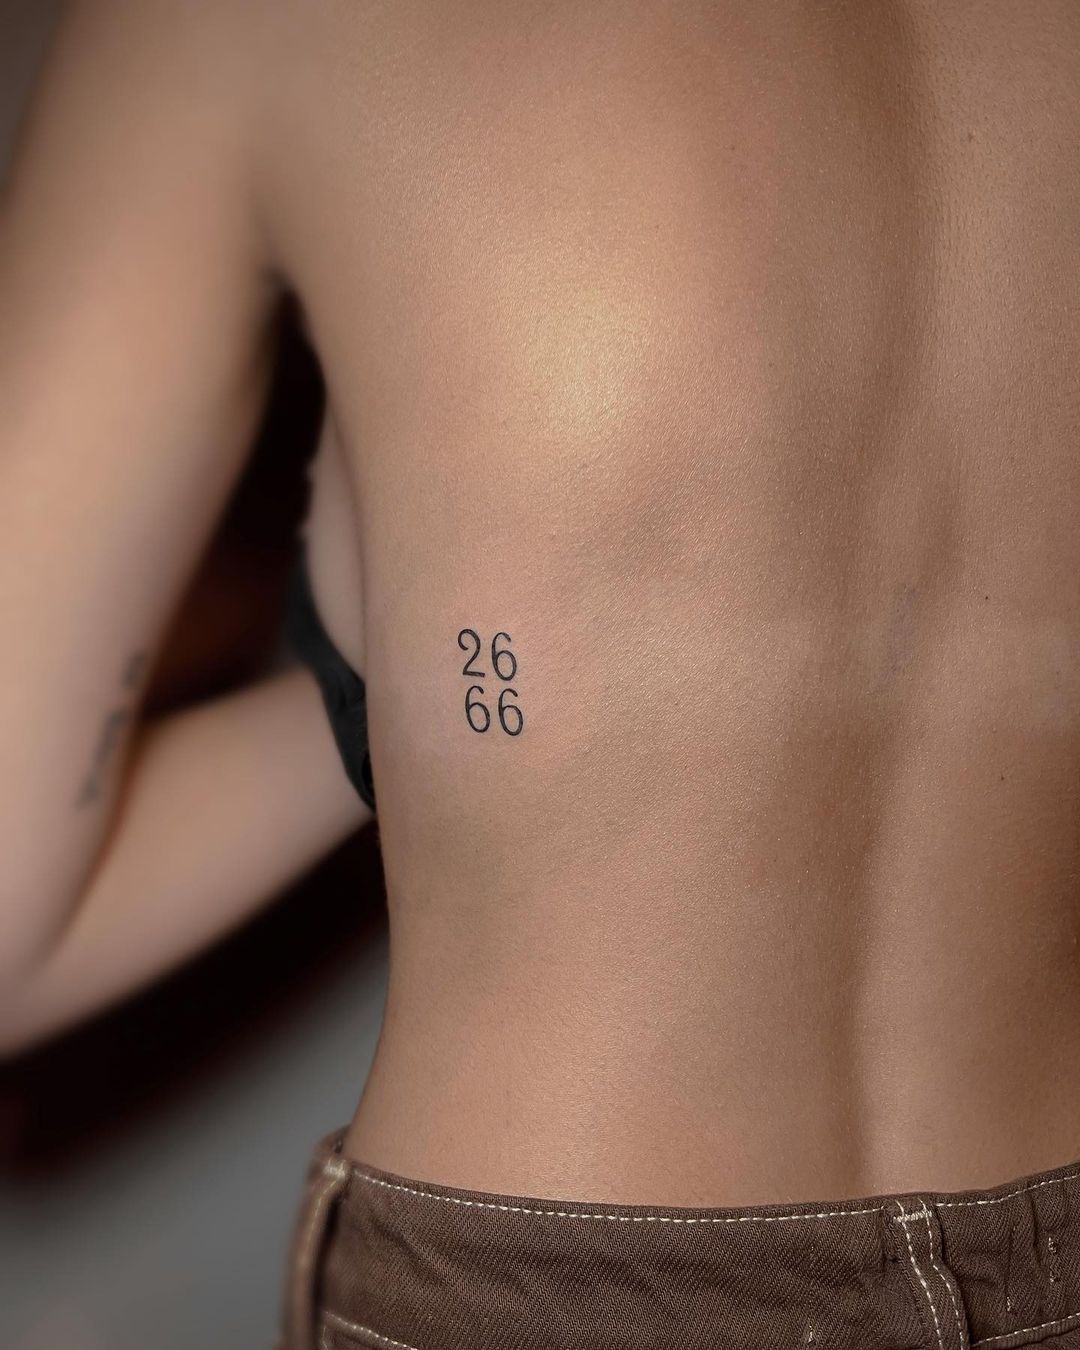 Minimalistic number tattoo design by rebustattoo